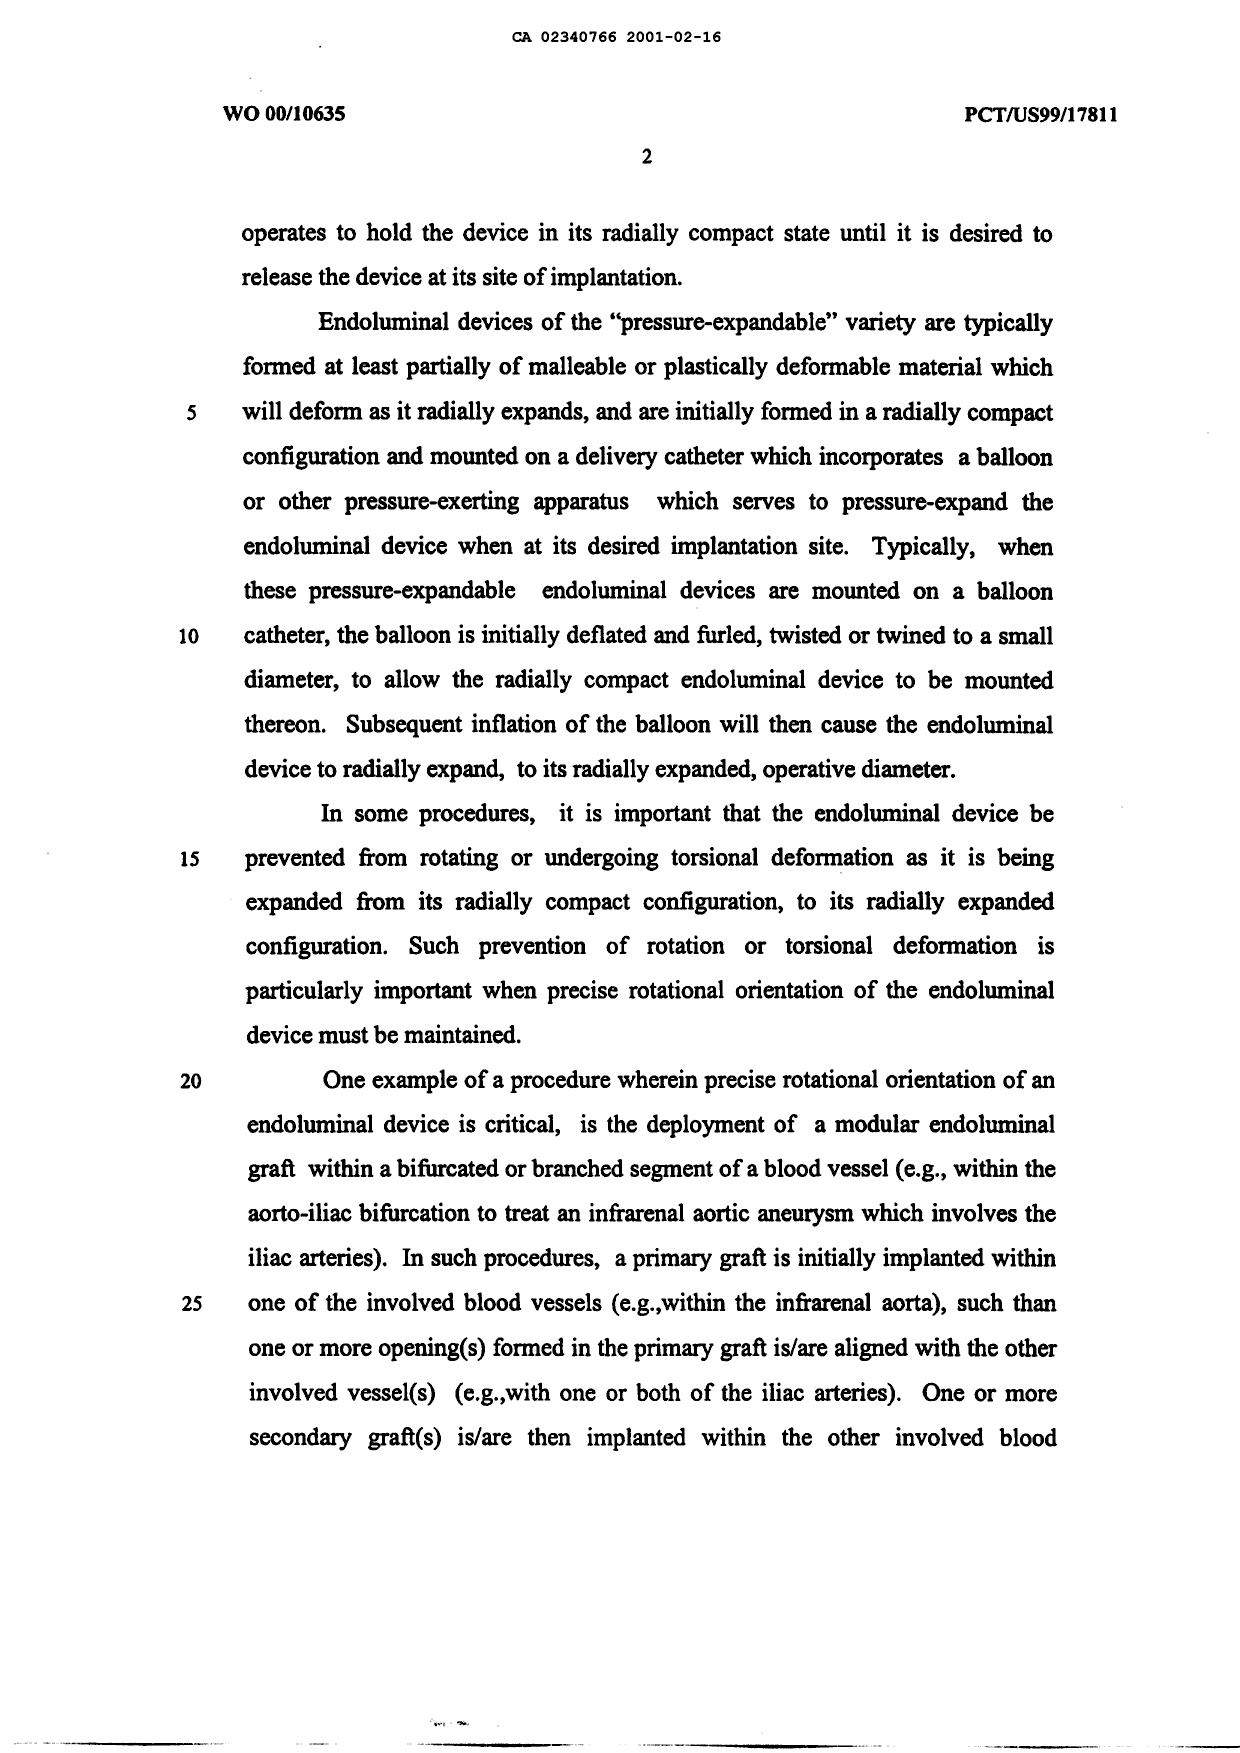 Canadian Patent Document 2340766. Description 20010216. Image 2 of 9